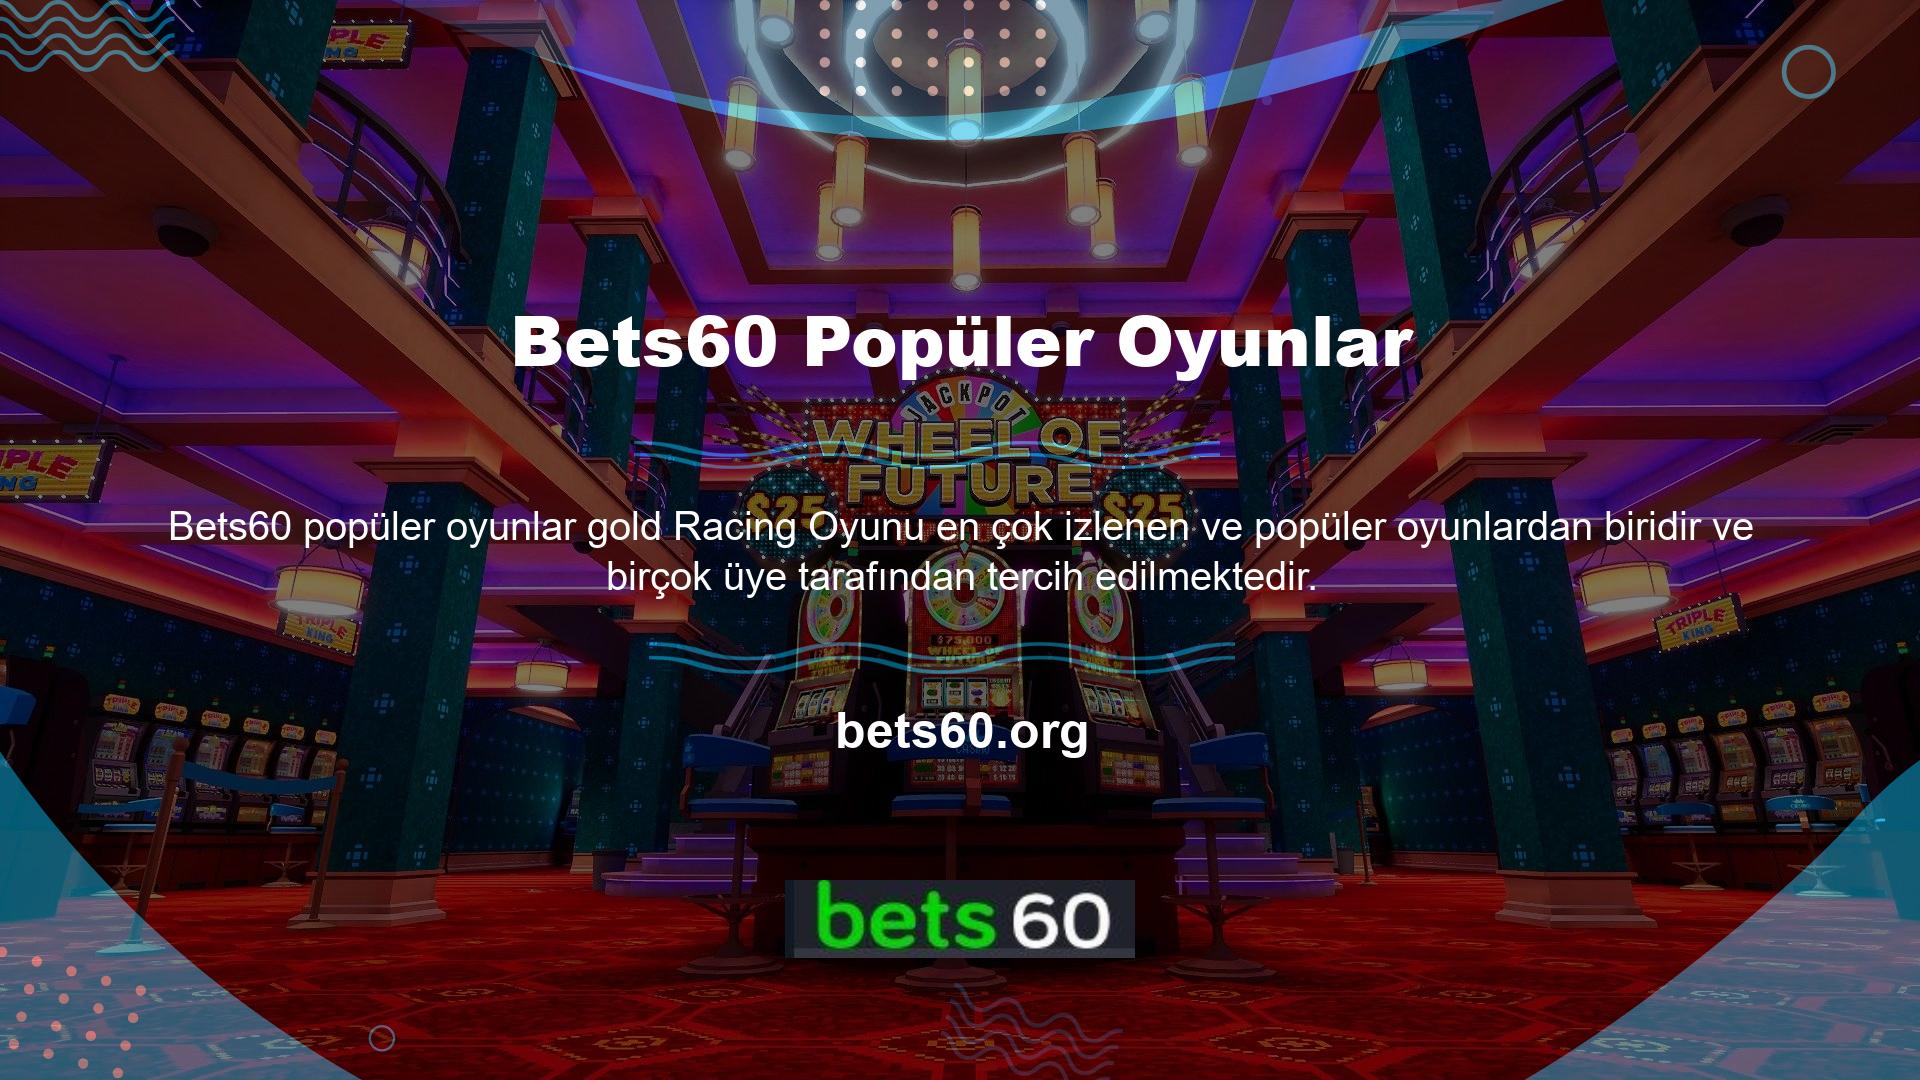 Bets60 Kazanma yüzdesi oldukça yüksek bir platform, herkes kendi zevkine uygun, makul bir oyun bulma şansına sahip